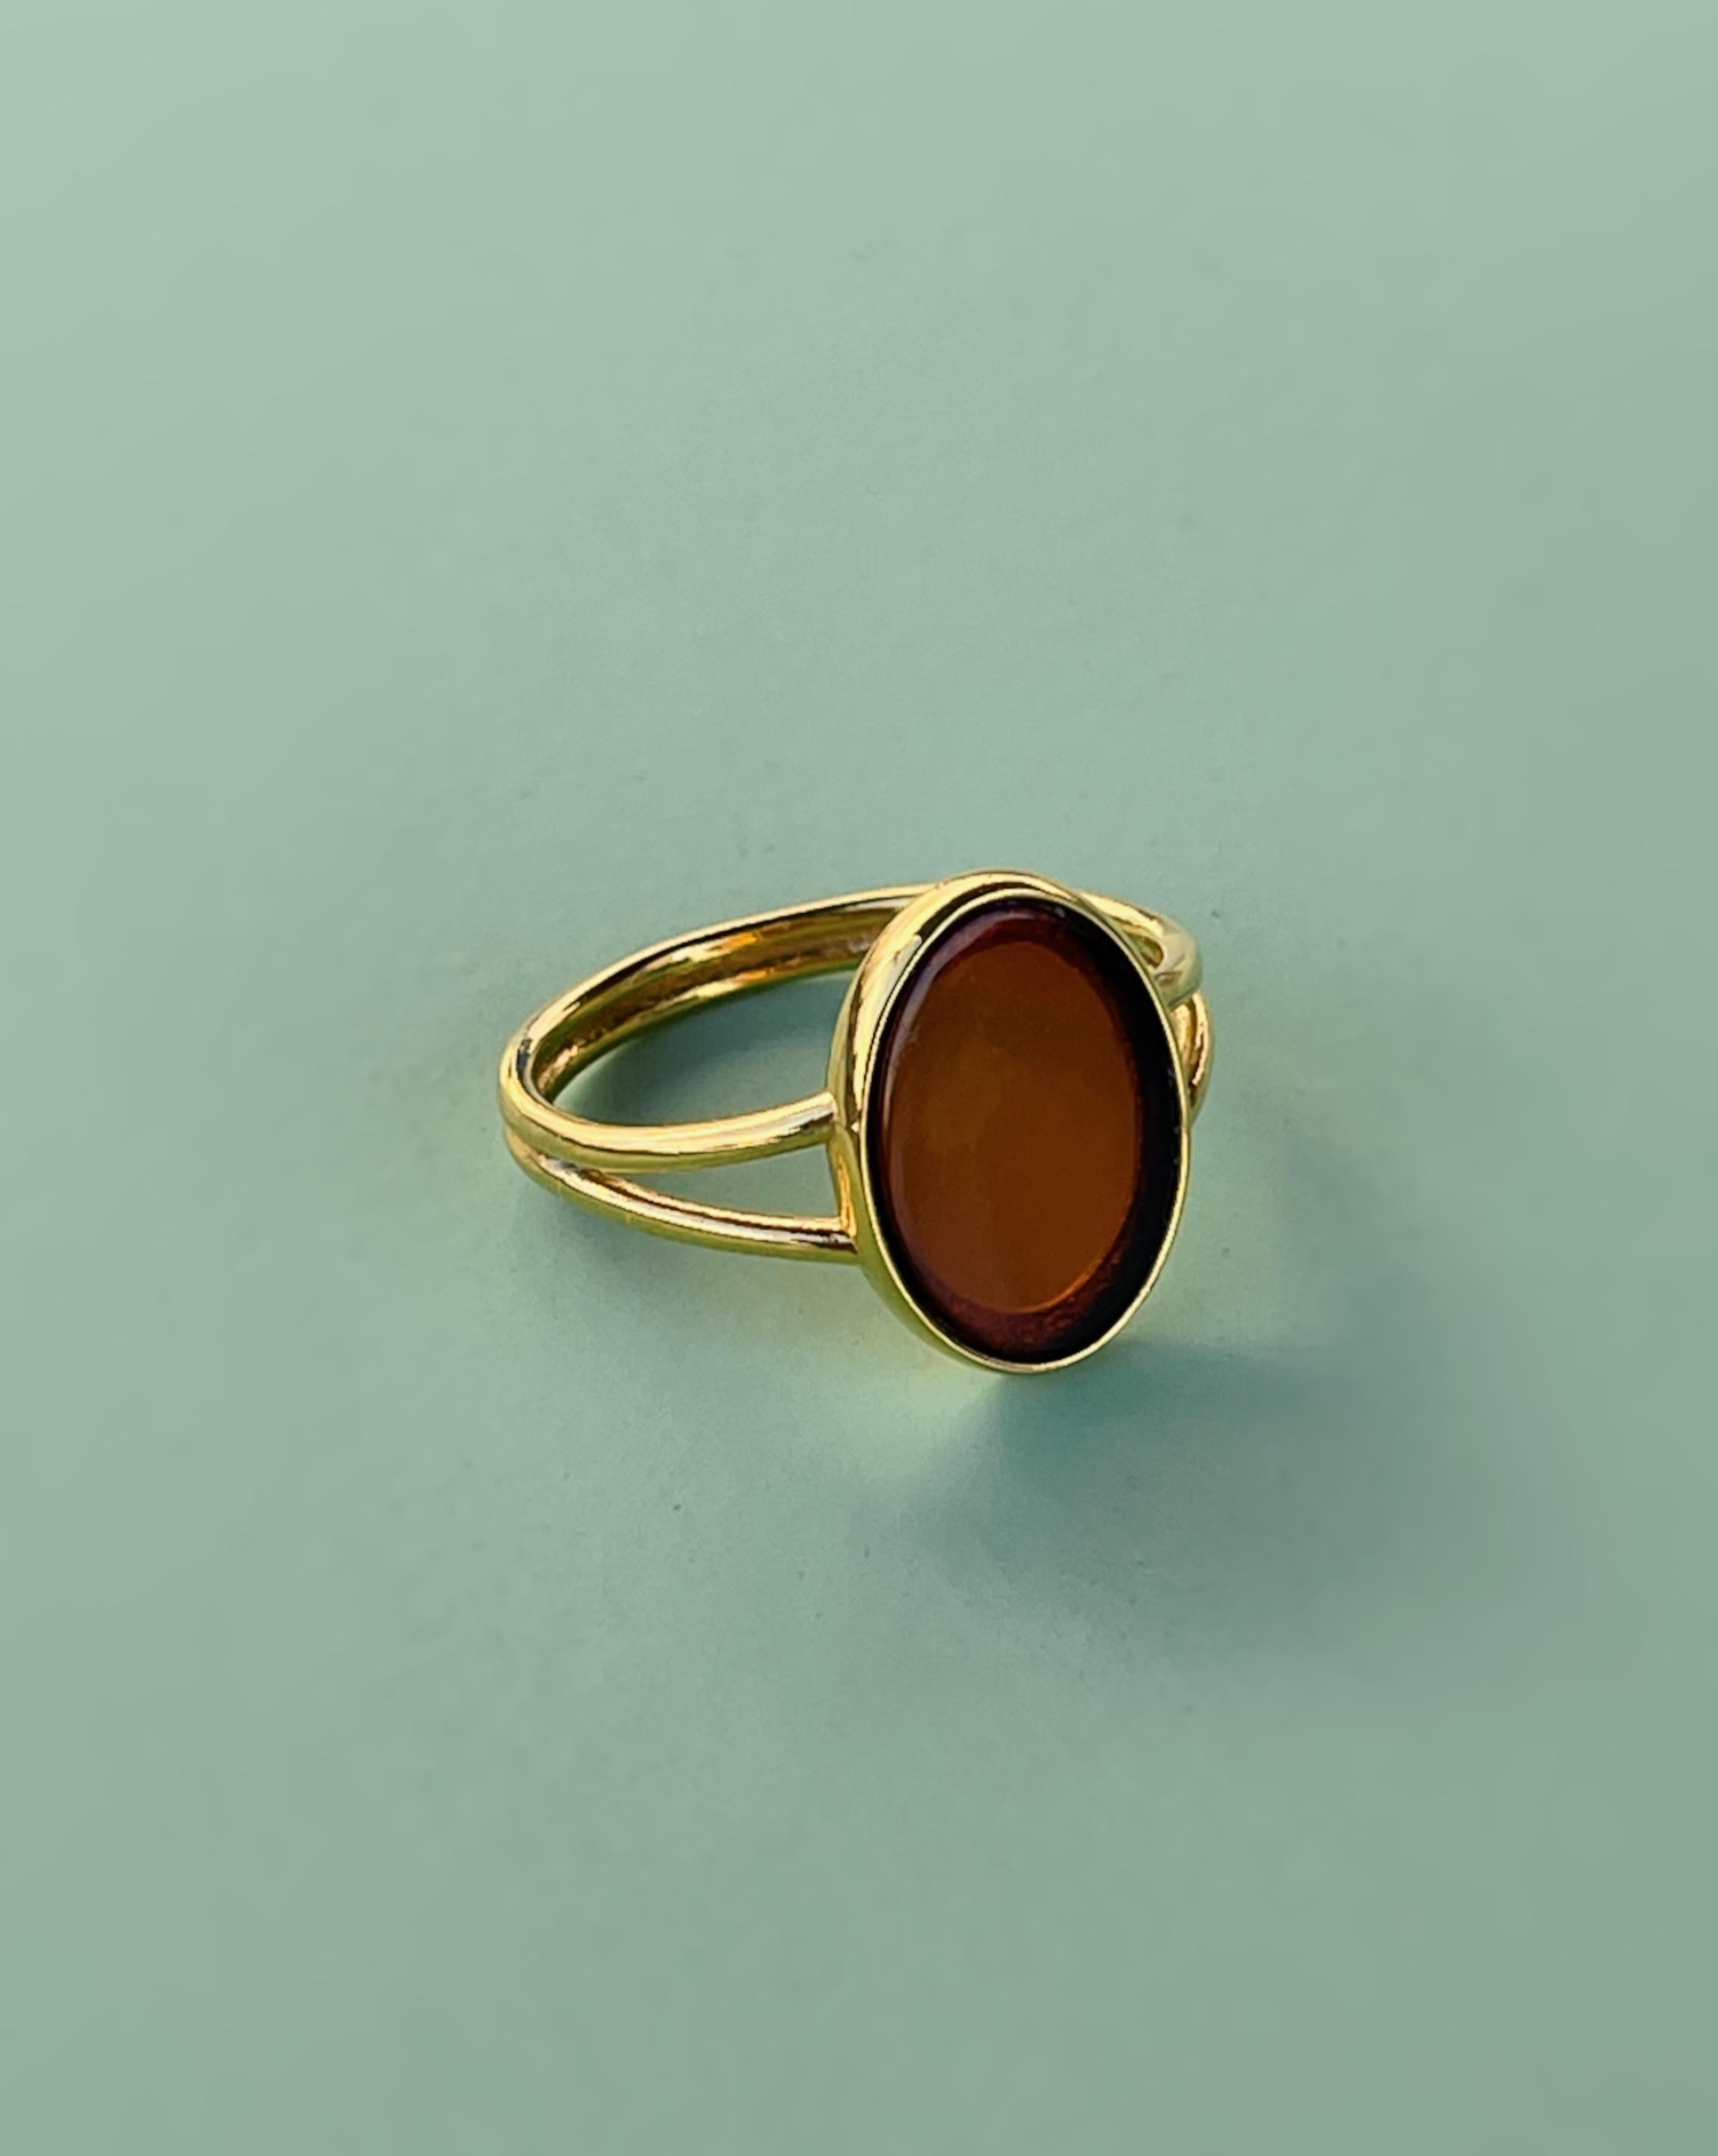 L'ambre baltique est une pierre de bonheur et de créativité. Il rappelle les chaudes journées d'été et la brise marine rafraîchissante. Portez cette bague et profitez de sa beauté ensoleillée. 
L'anneau est en laiton, plaqué d'or 24 carats. 
Taille